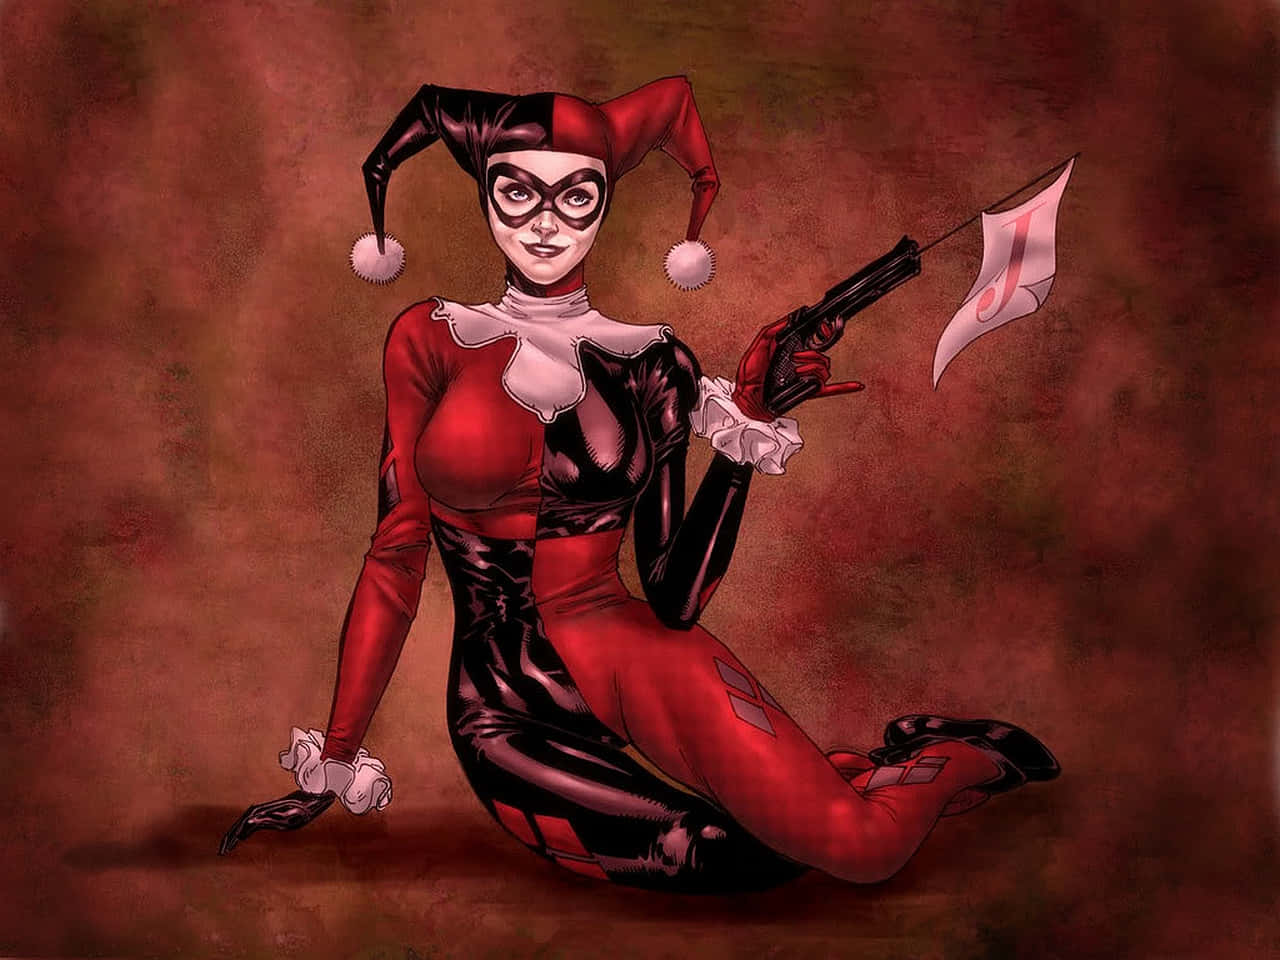 Billeder af Harley Quinn som baggrund.